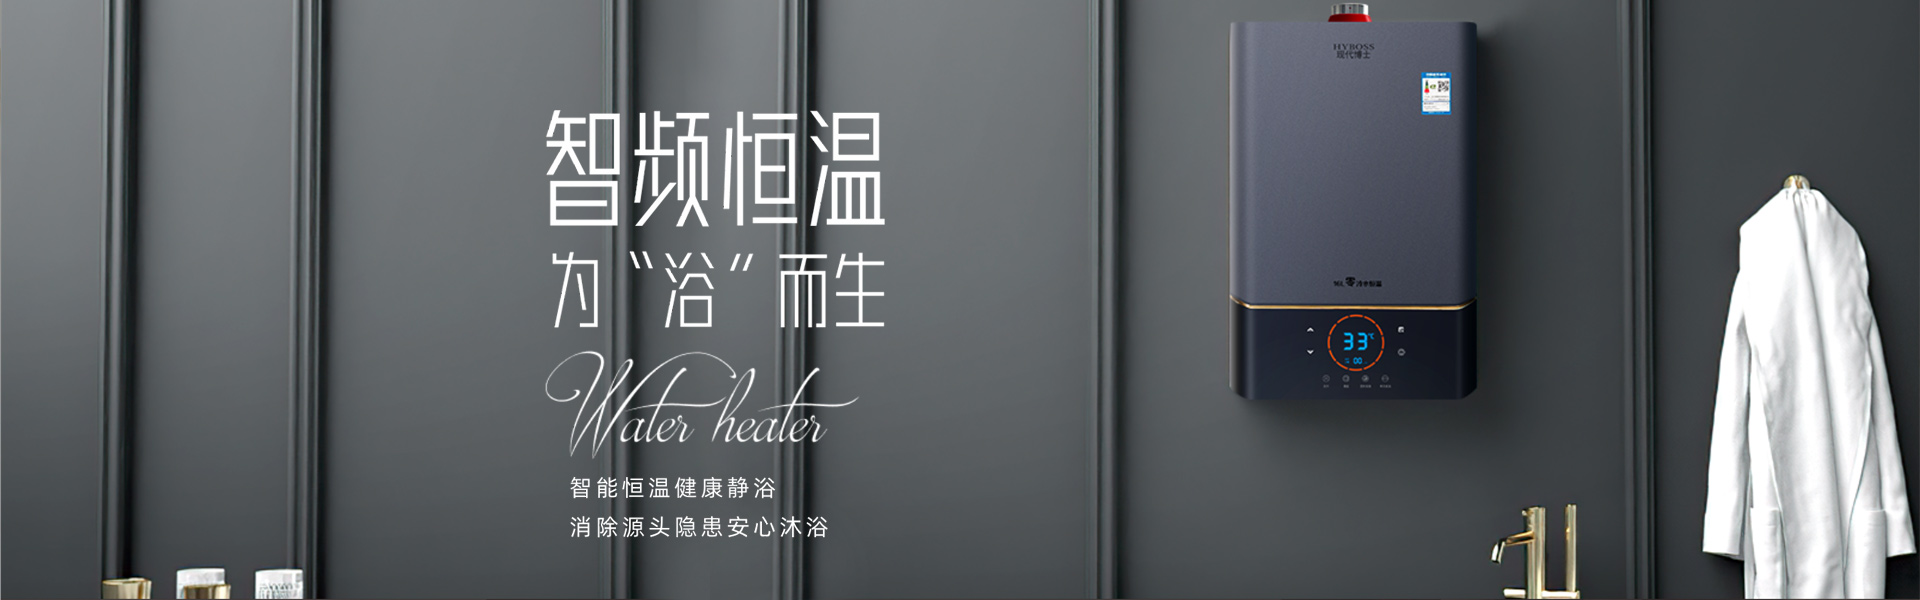 中国厨卫电器十大品牌-大吸力吸油烟机